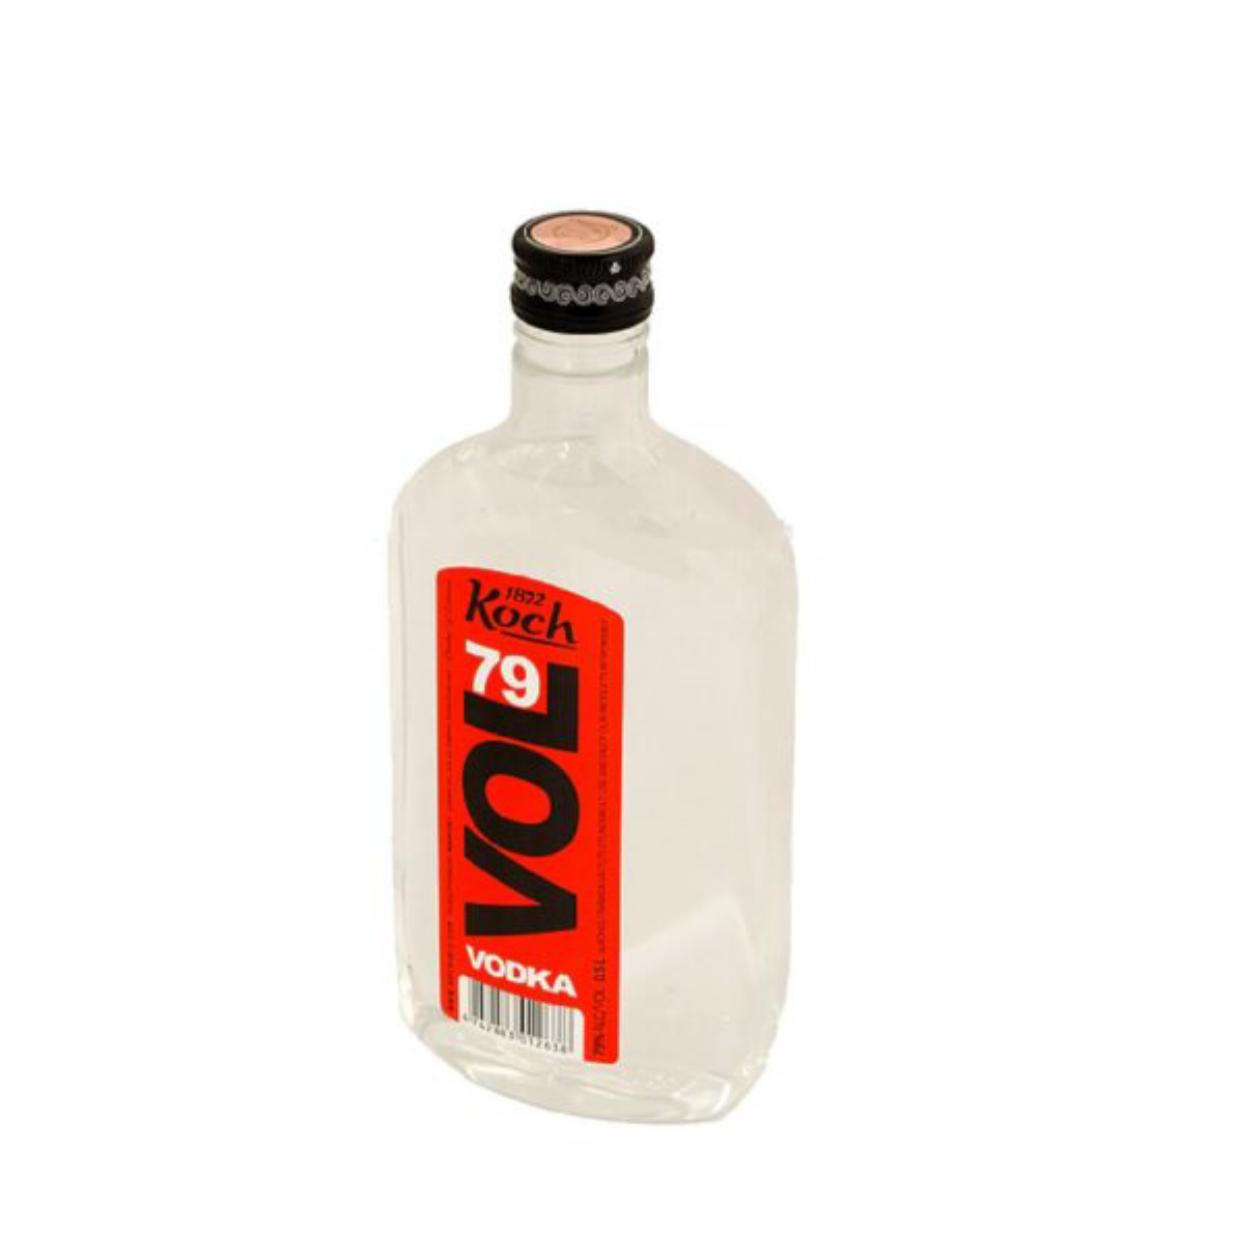 VOL79 Vodka 79% 50cl PET